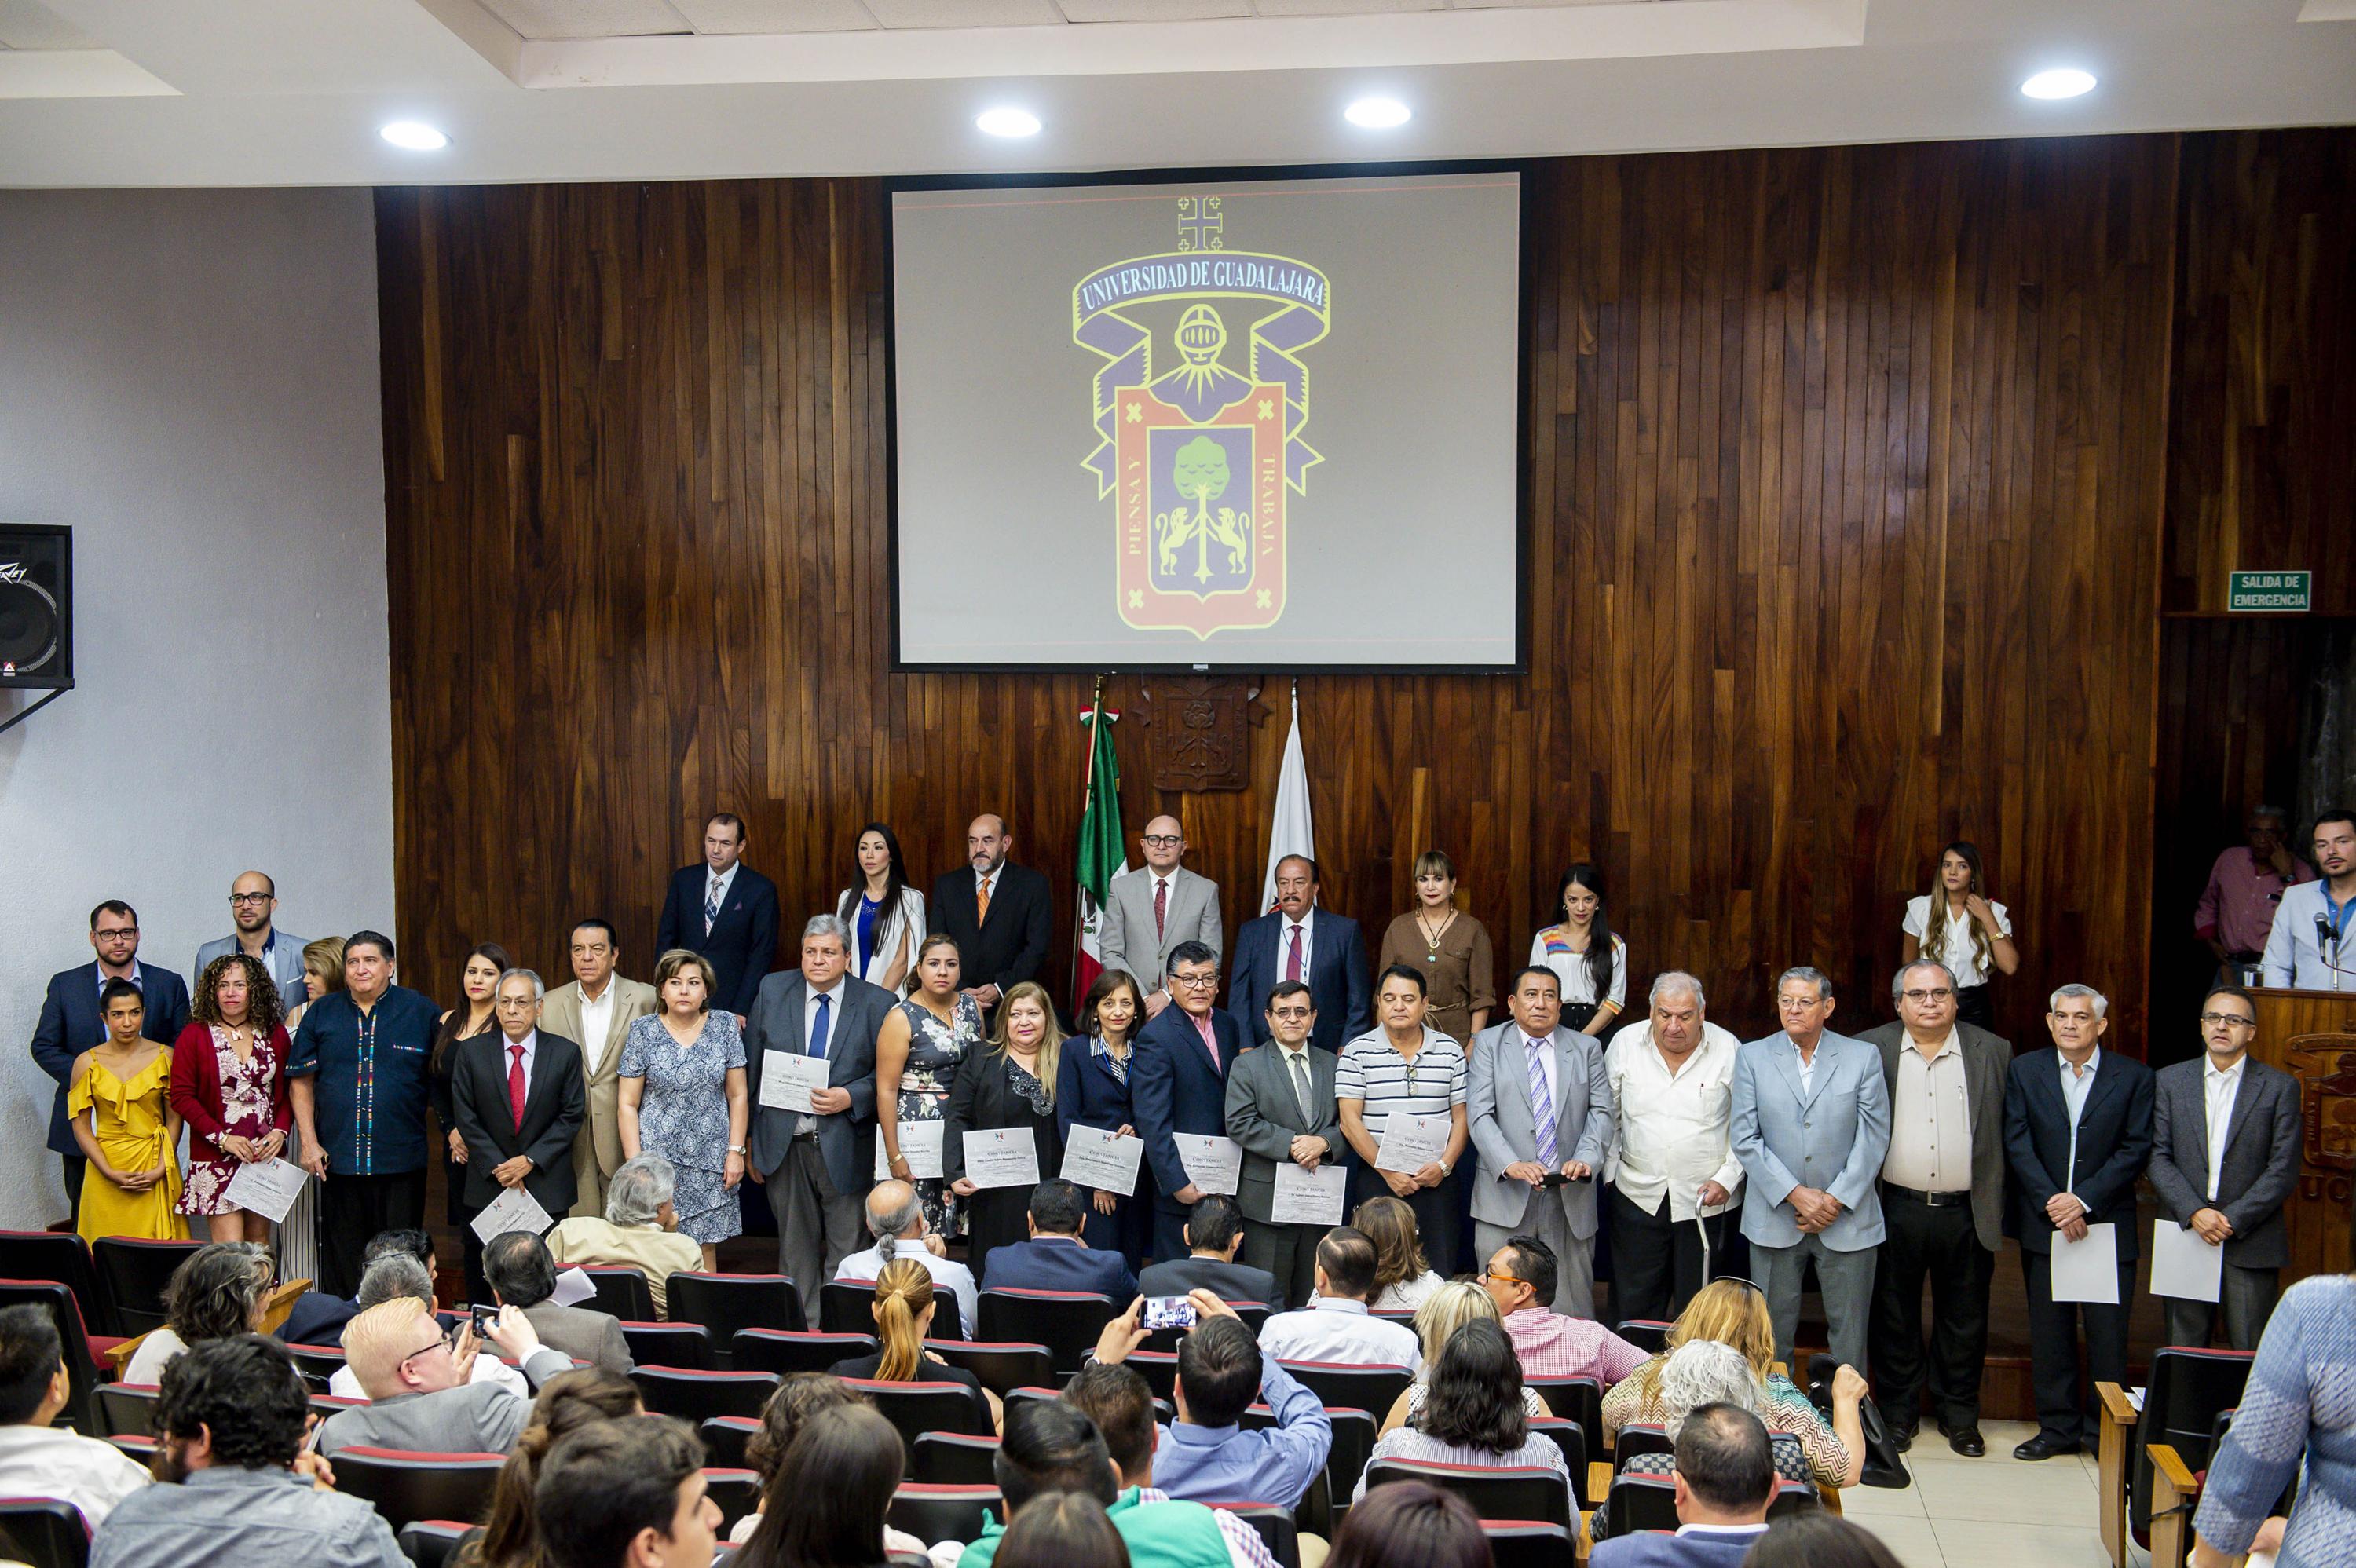 Autoridades universitarias y miembros de la Academia Mexicana de Desarrollo Urbano, participando en la ceremonia de reconocimientos